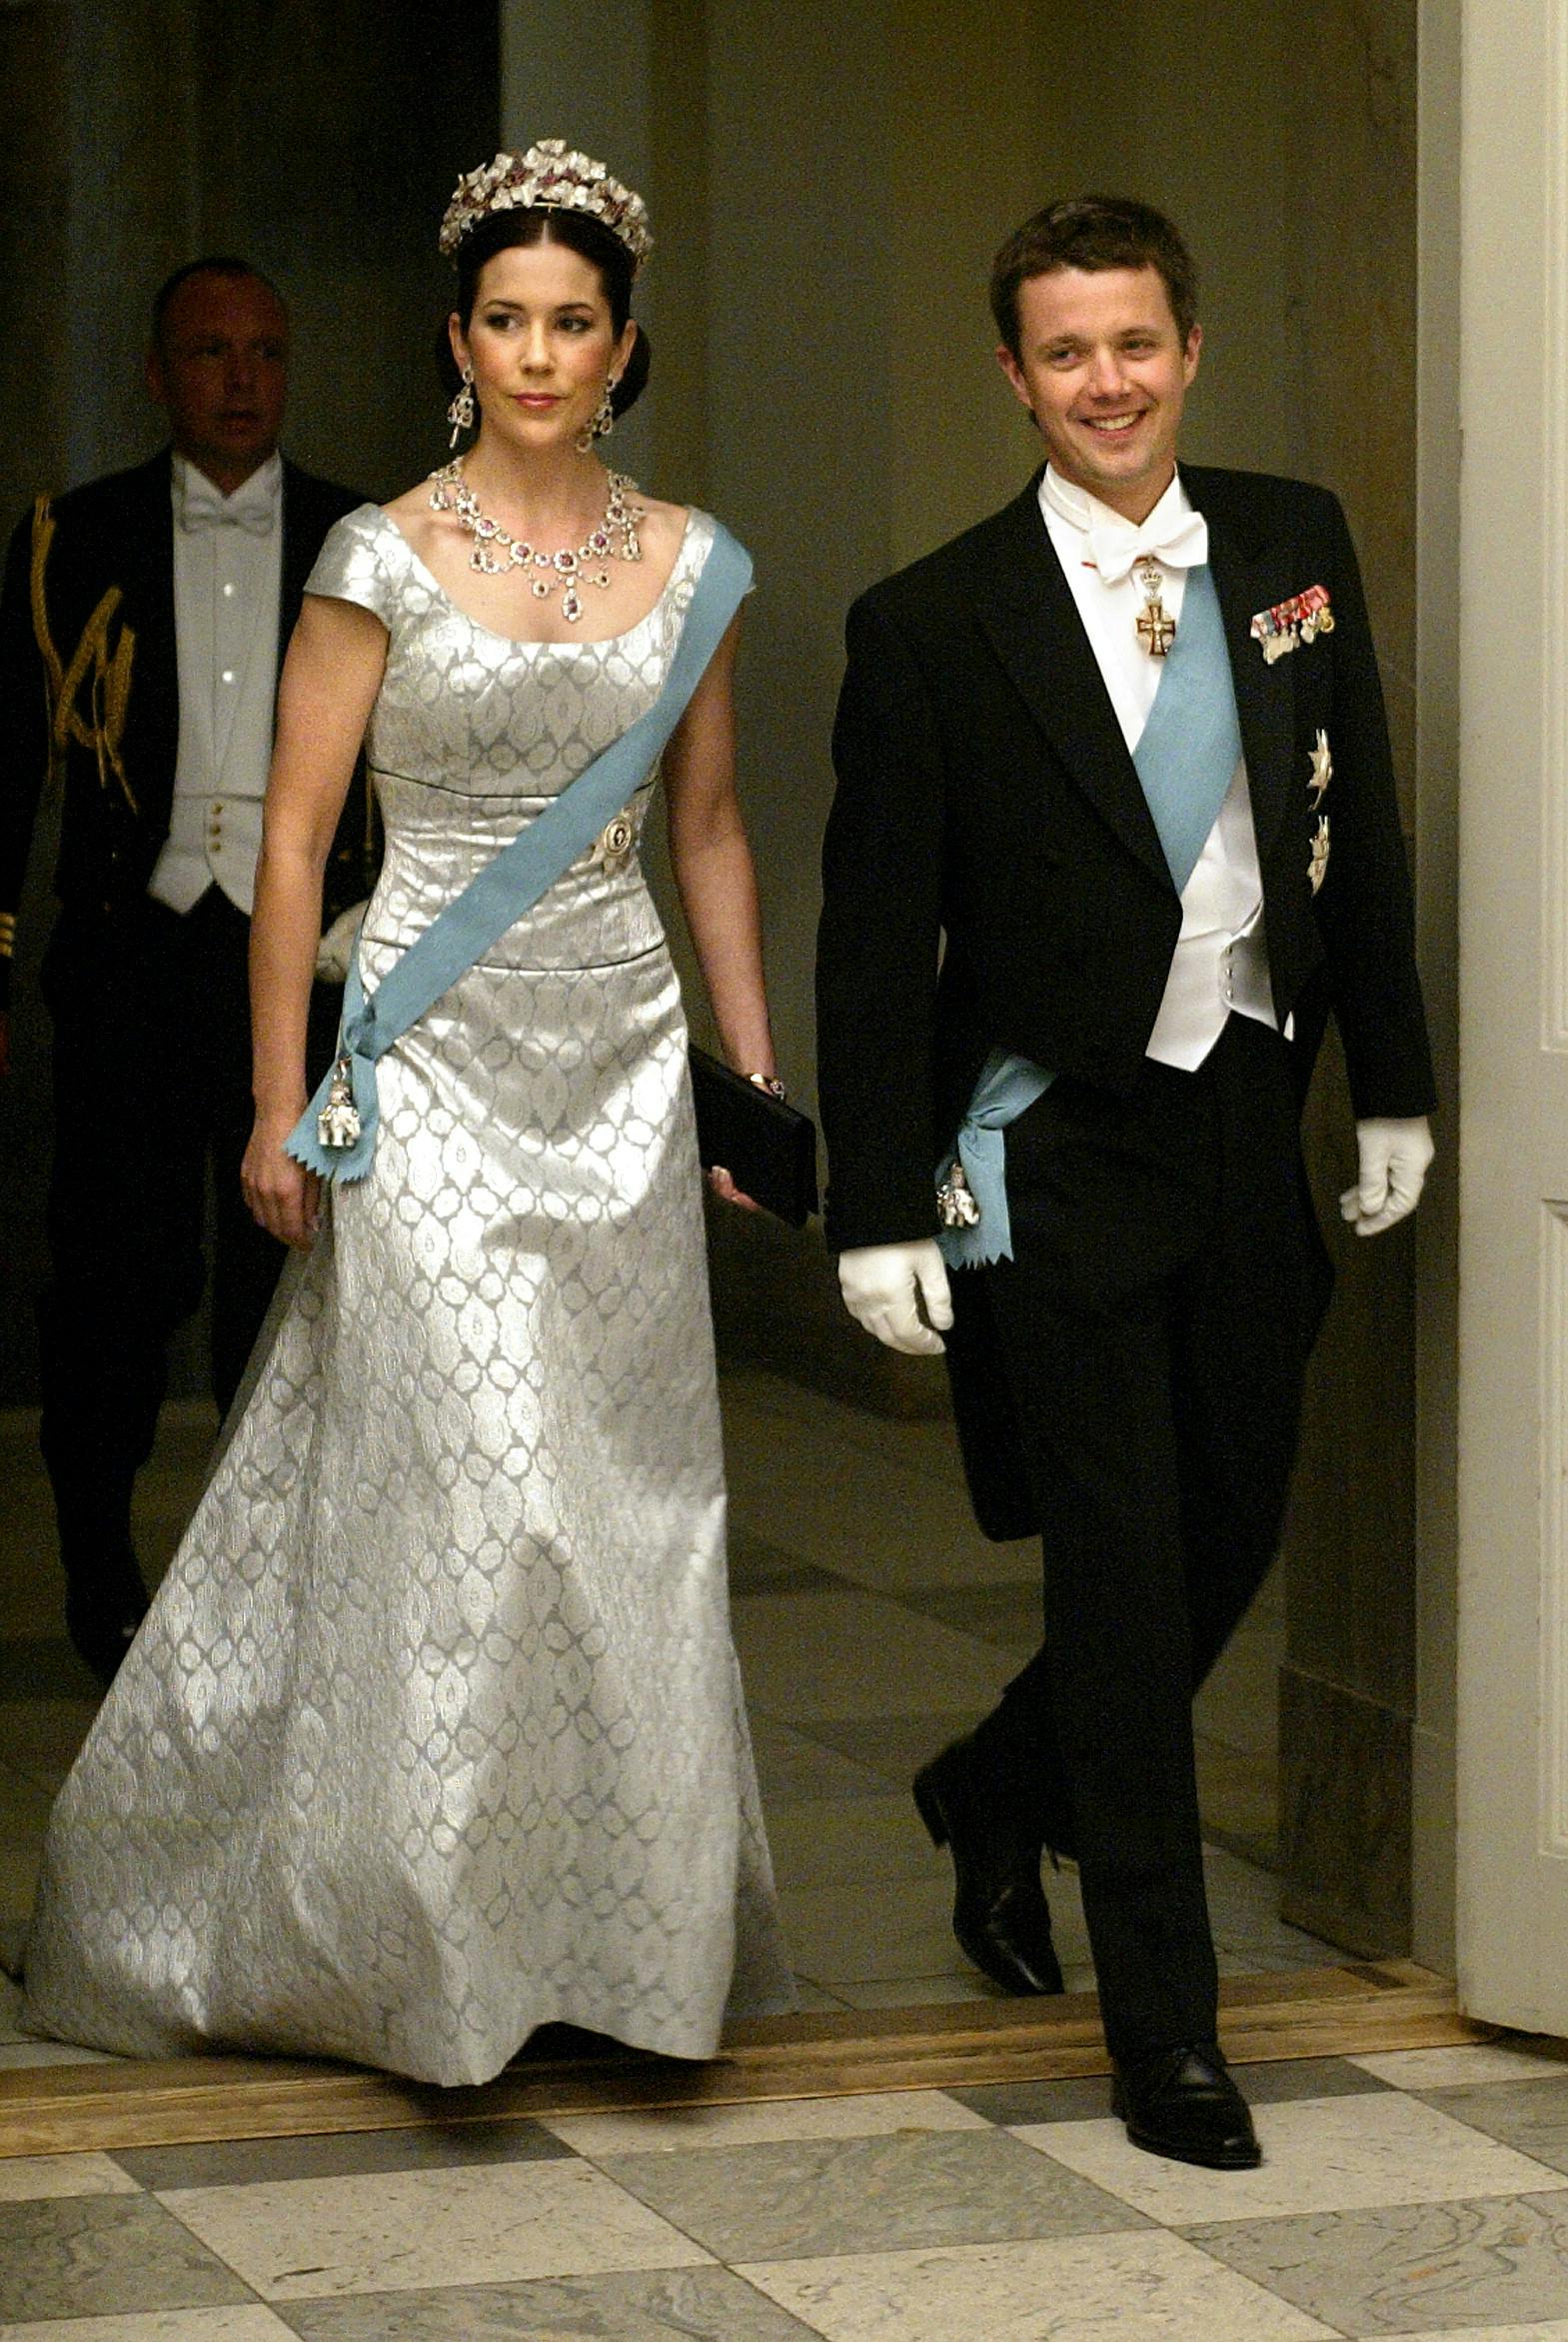 Mary Donaldson og Kronprins Frederik ankommer til gallamiddag på Christiansborg i anledning af det forestående royale bryllup.